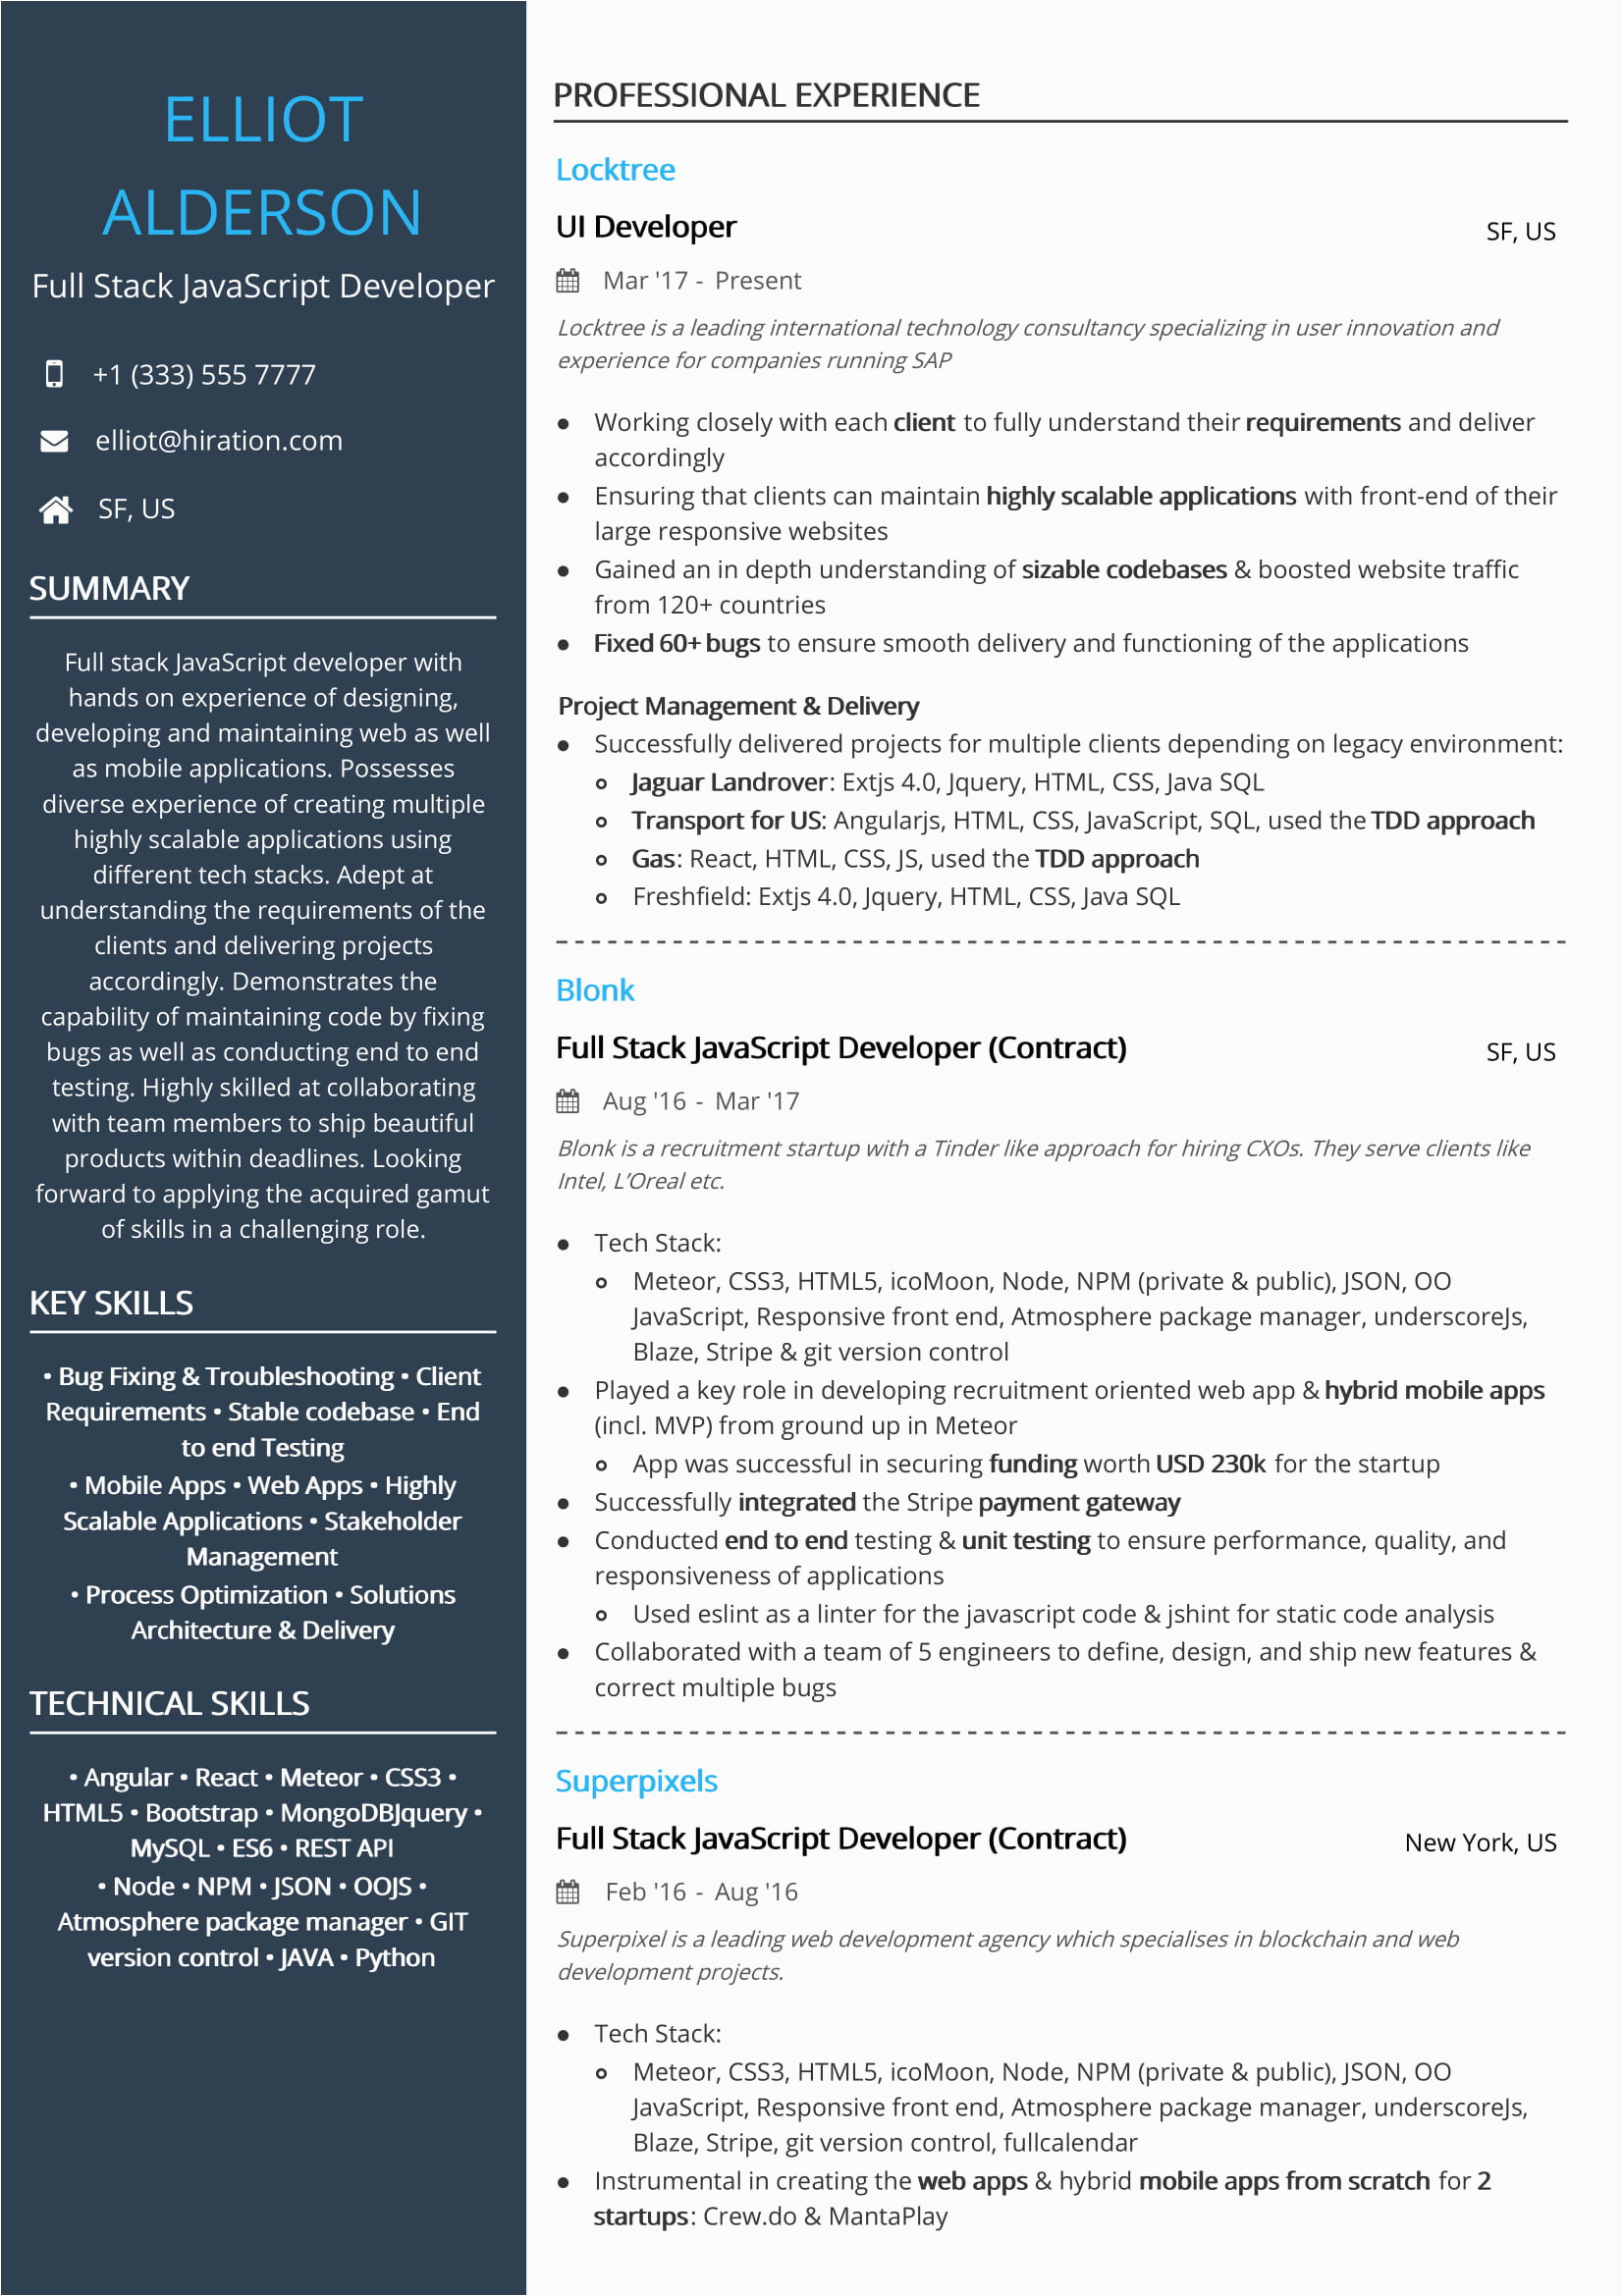 Full Stack Web Developer Resume Template Technology Resume Examples & Resume Samples [2020]